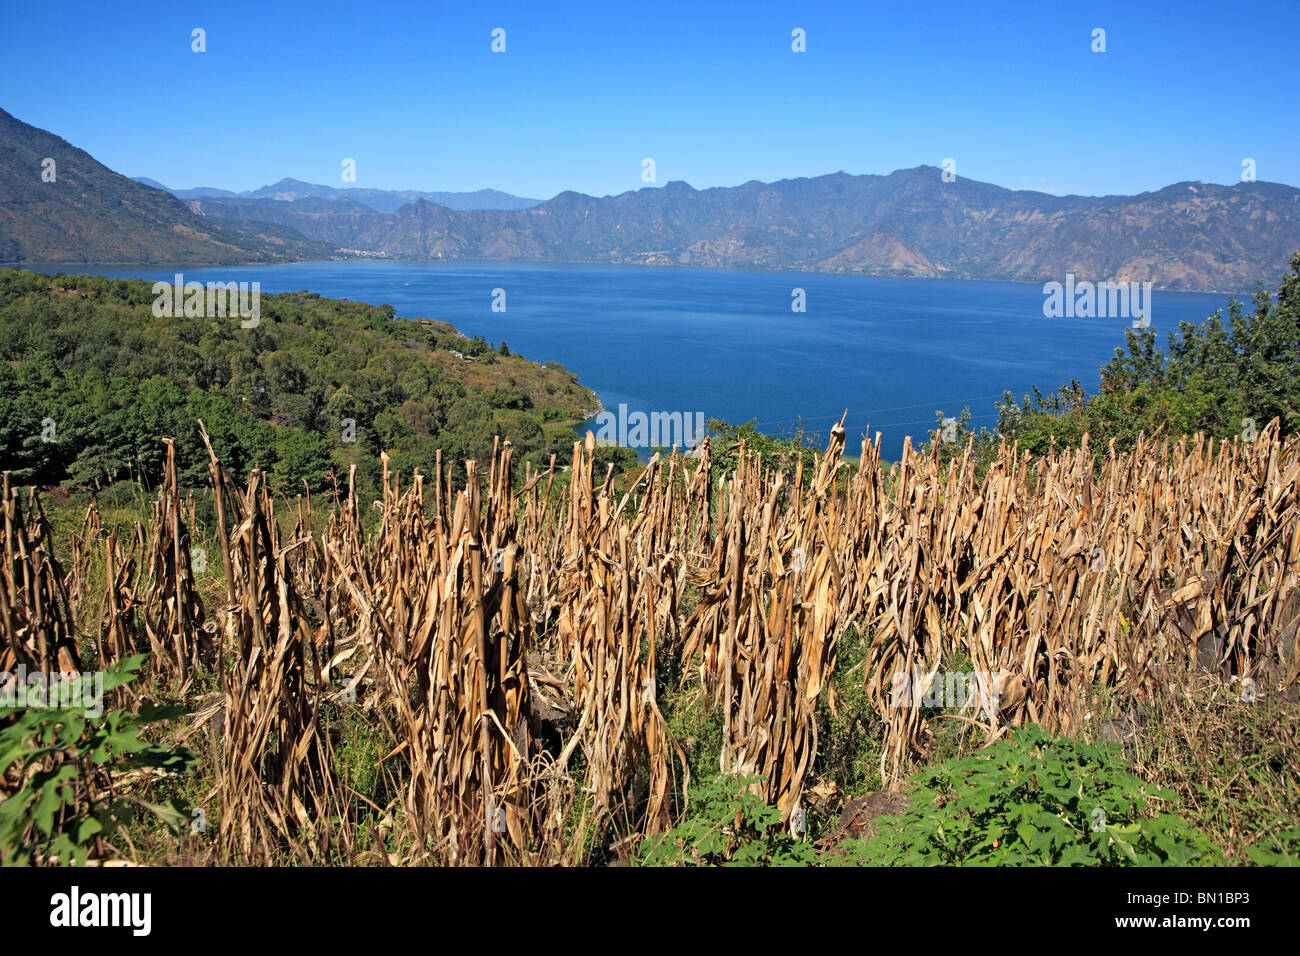 Atitlan lake, Guatemala Stock Photo